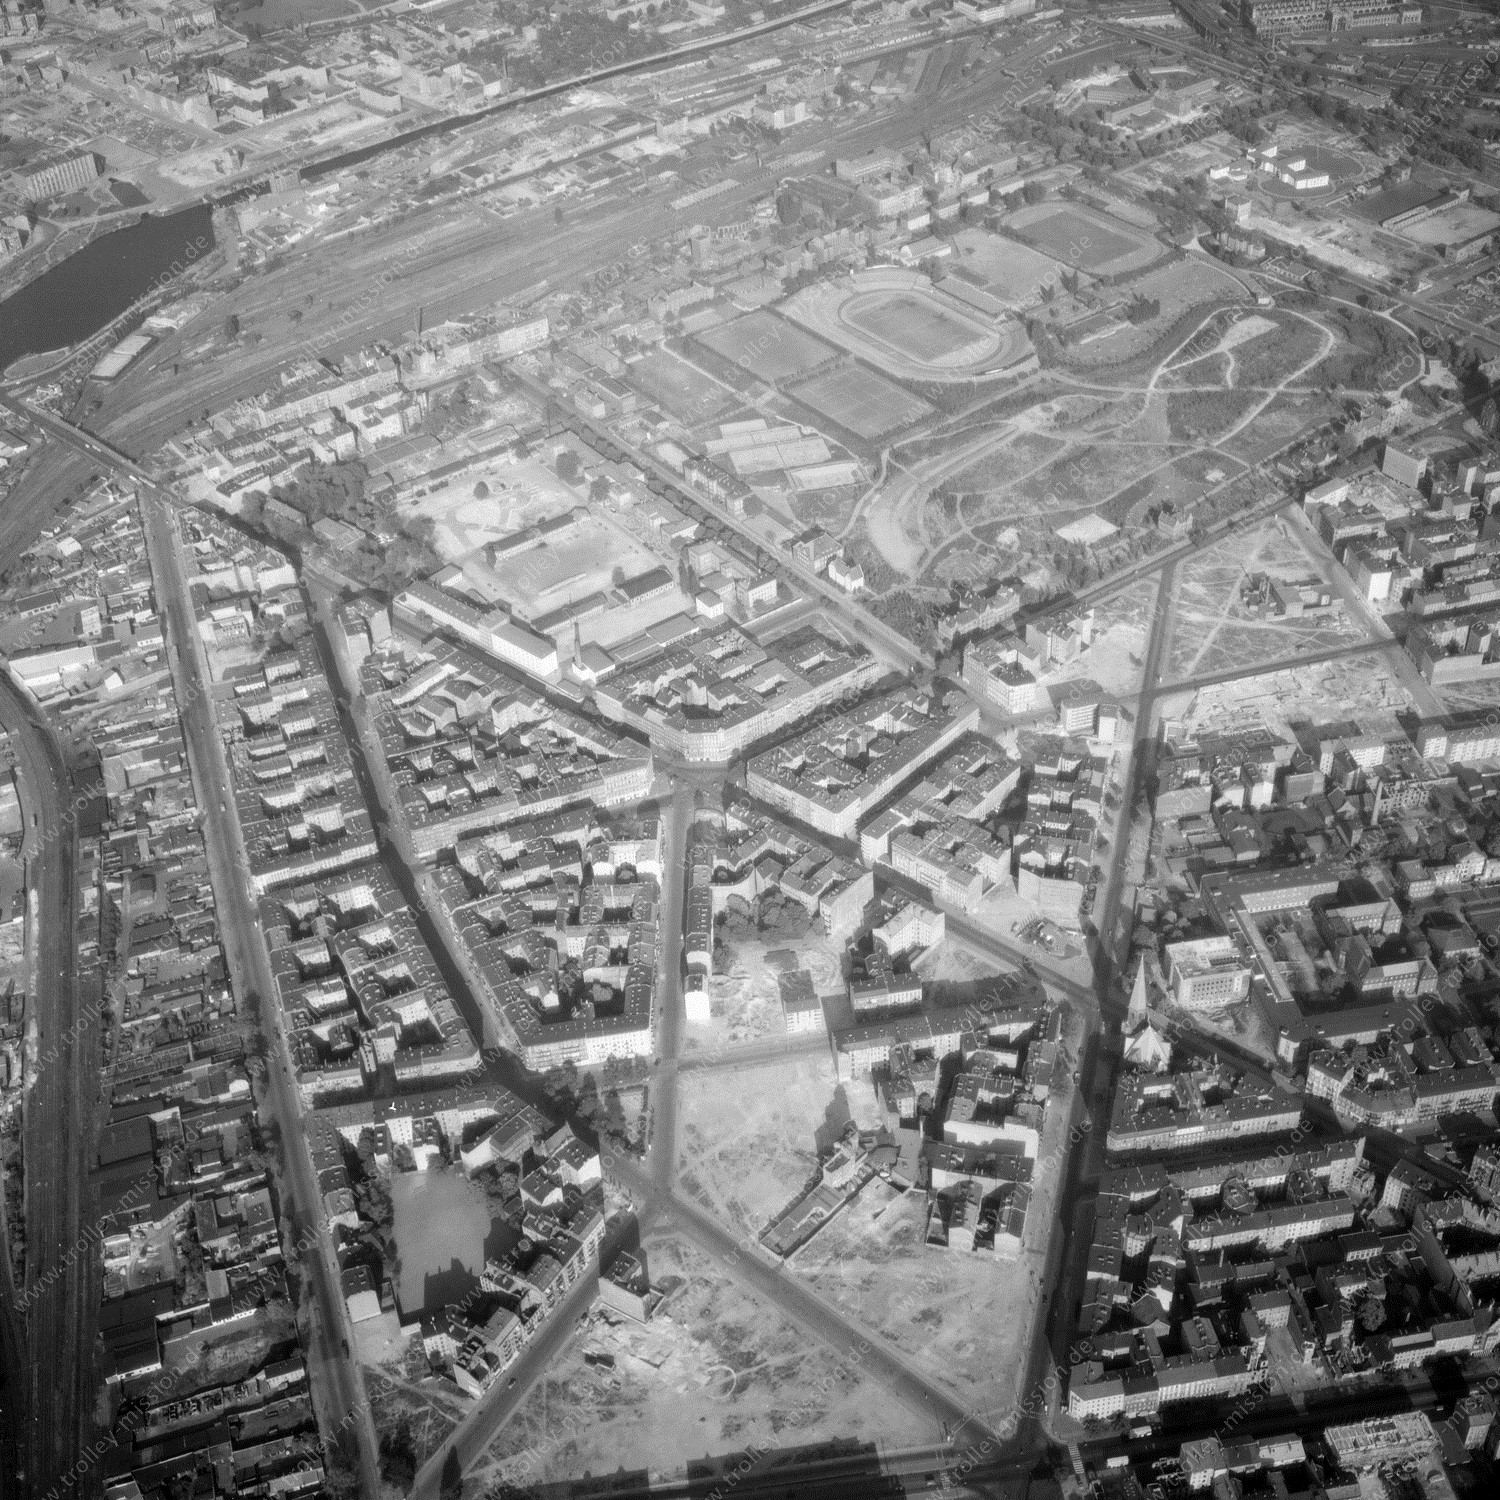 Alte Fotos und Luftbilder von Berlin - Luftbildaufnahme Nr. 03 - Historische Luftaufnahmen von West-Berlin aus dem Jahr 1954 - Flugstrecke Oscar